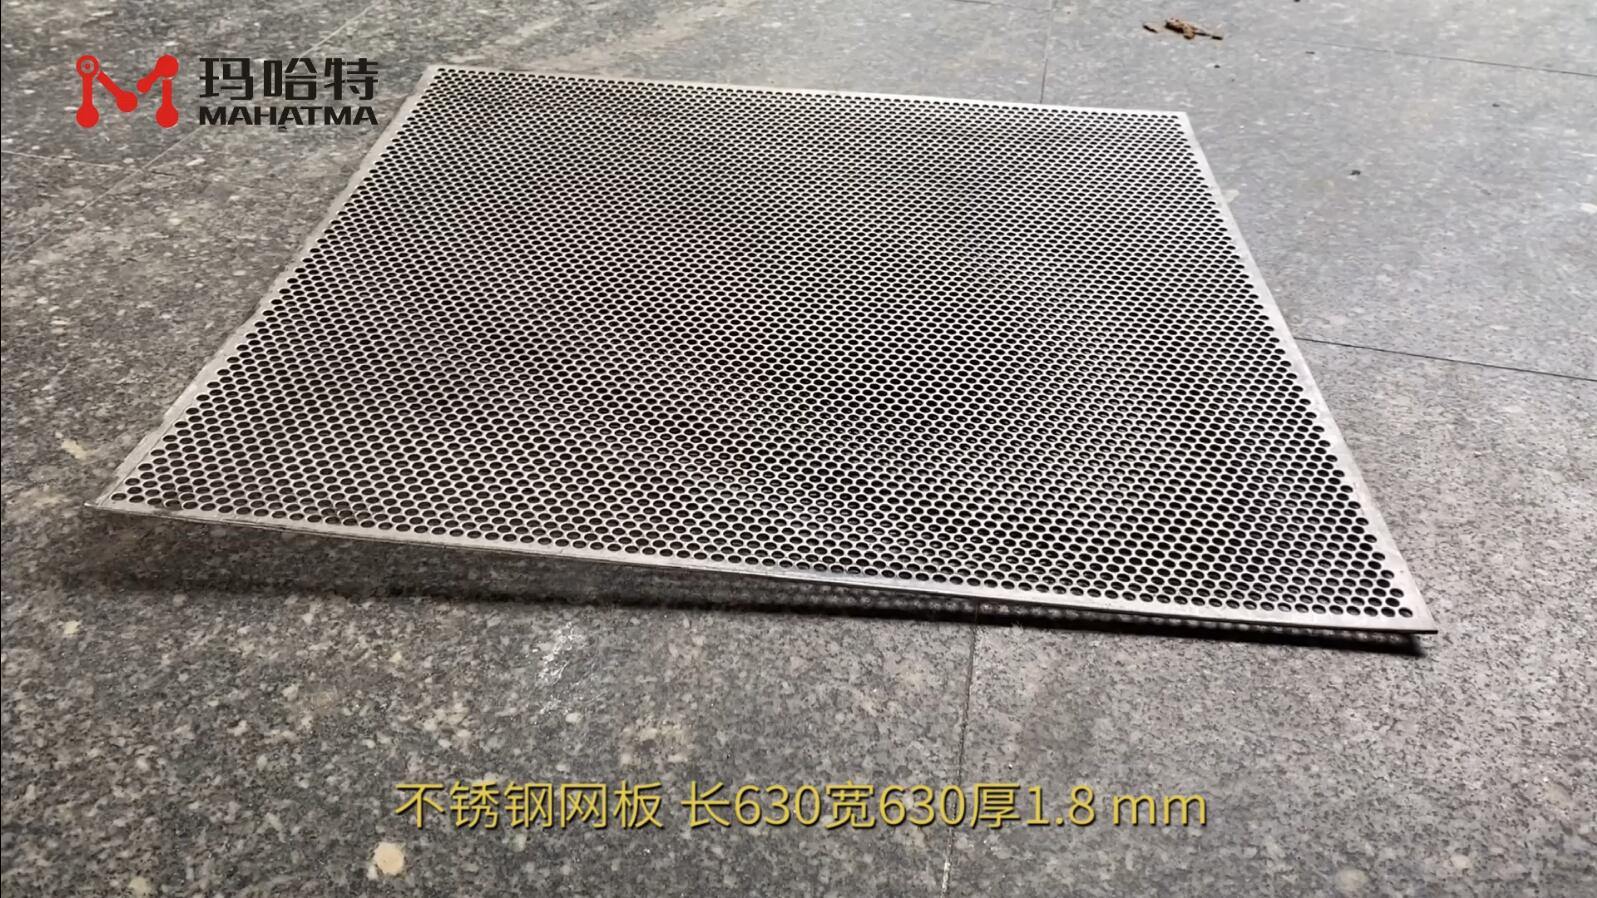 不锈钢网板 MHT50-1300 长方形 长630宽630厚1.8mm 